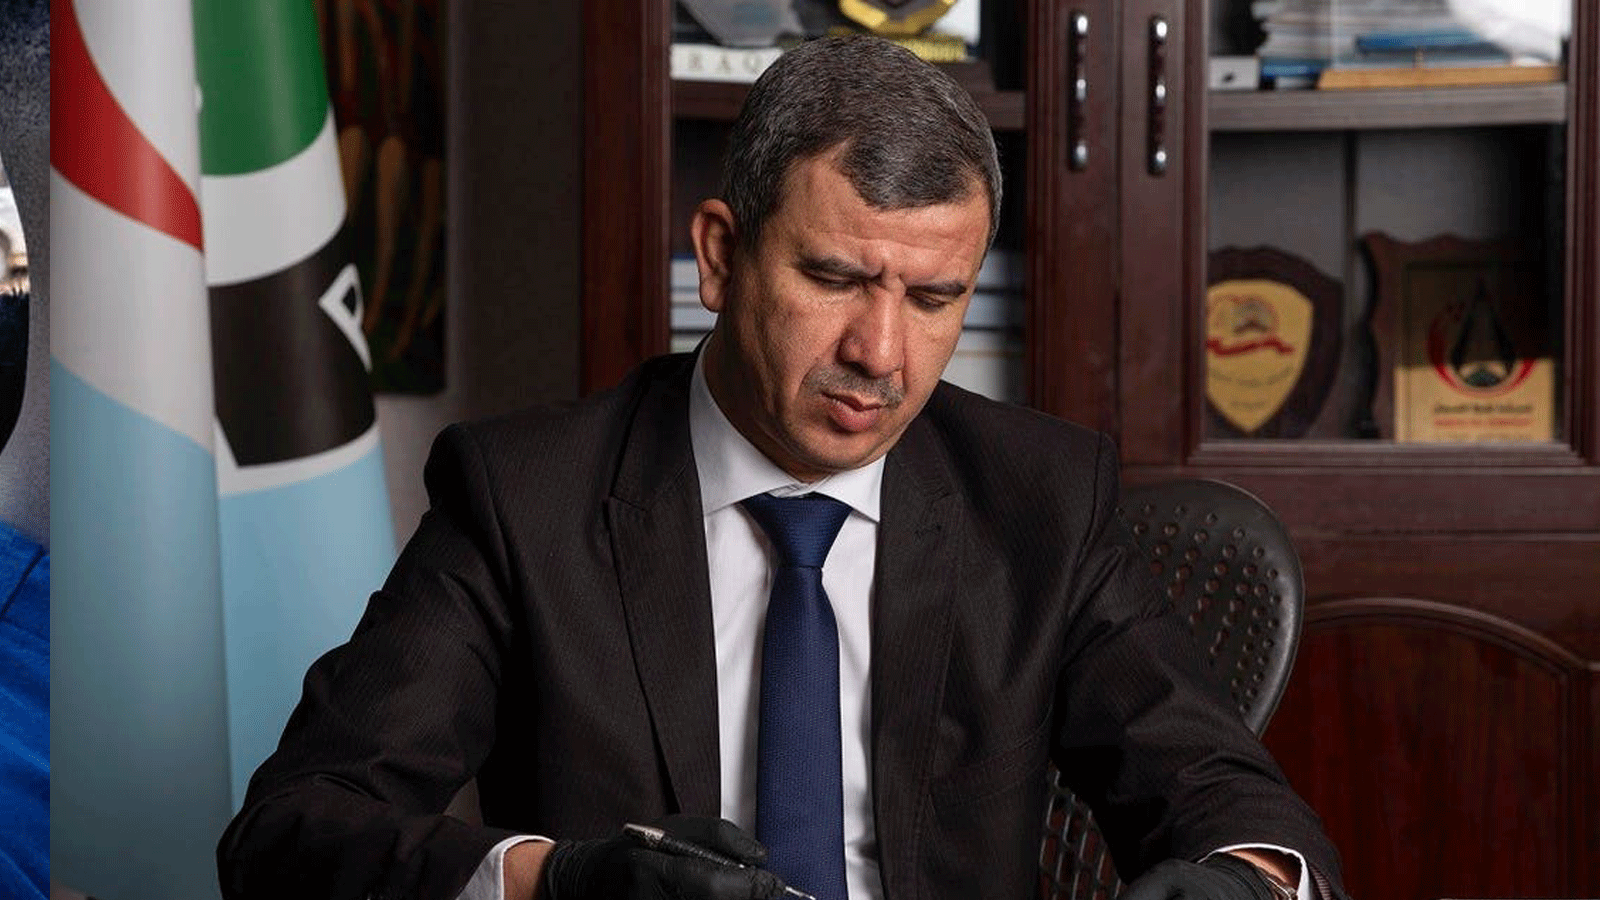 وزير النفط العراقي إحسان عبد الجبار يقرأ وثائق في شركة نفط البصرة في المدينة الساحلية جنوبي العراق. 9 أيار/مايو 2020.